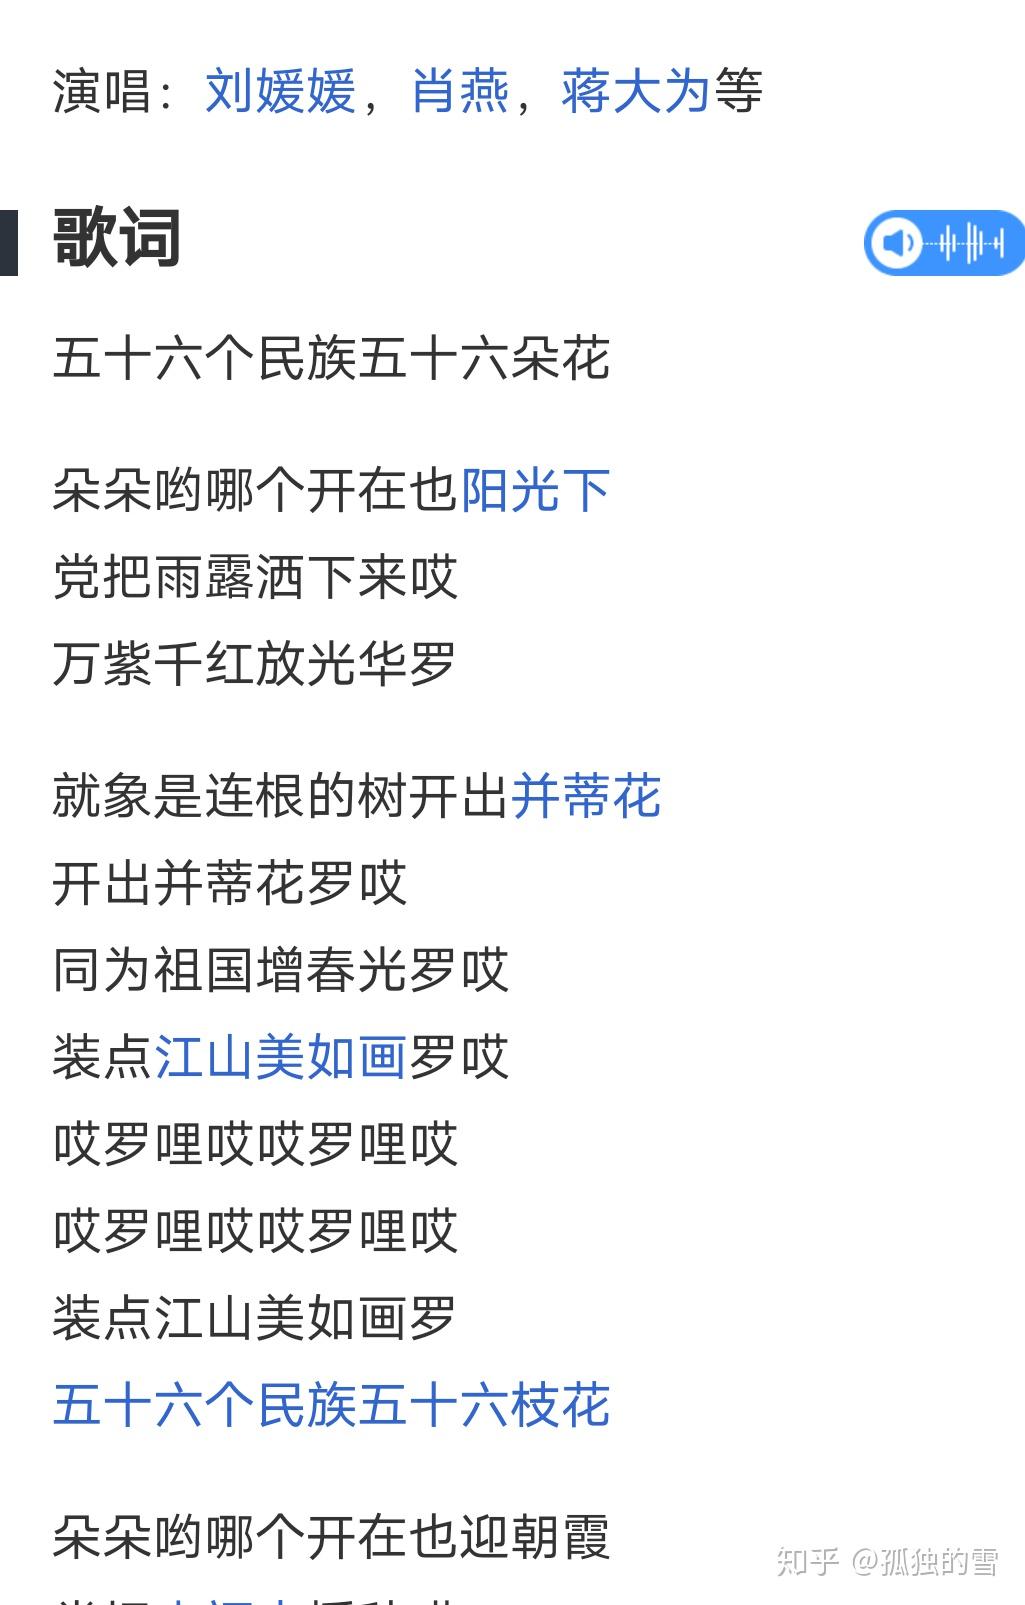 记忆中爱我中华歌词五十六个民族五十六枝花是错误的歌词吗